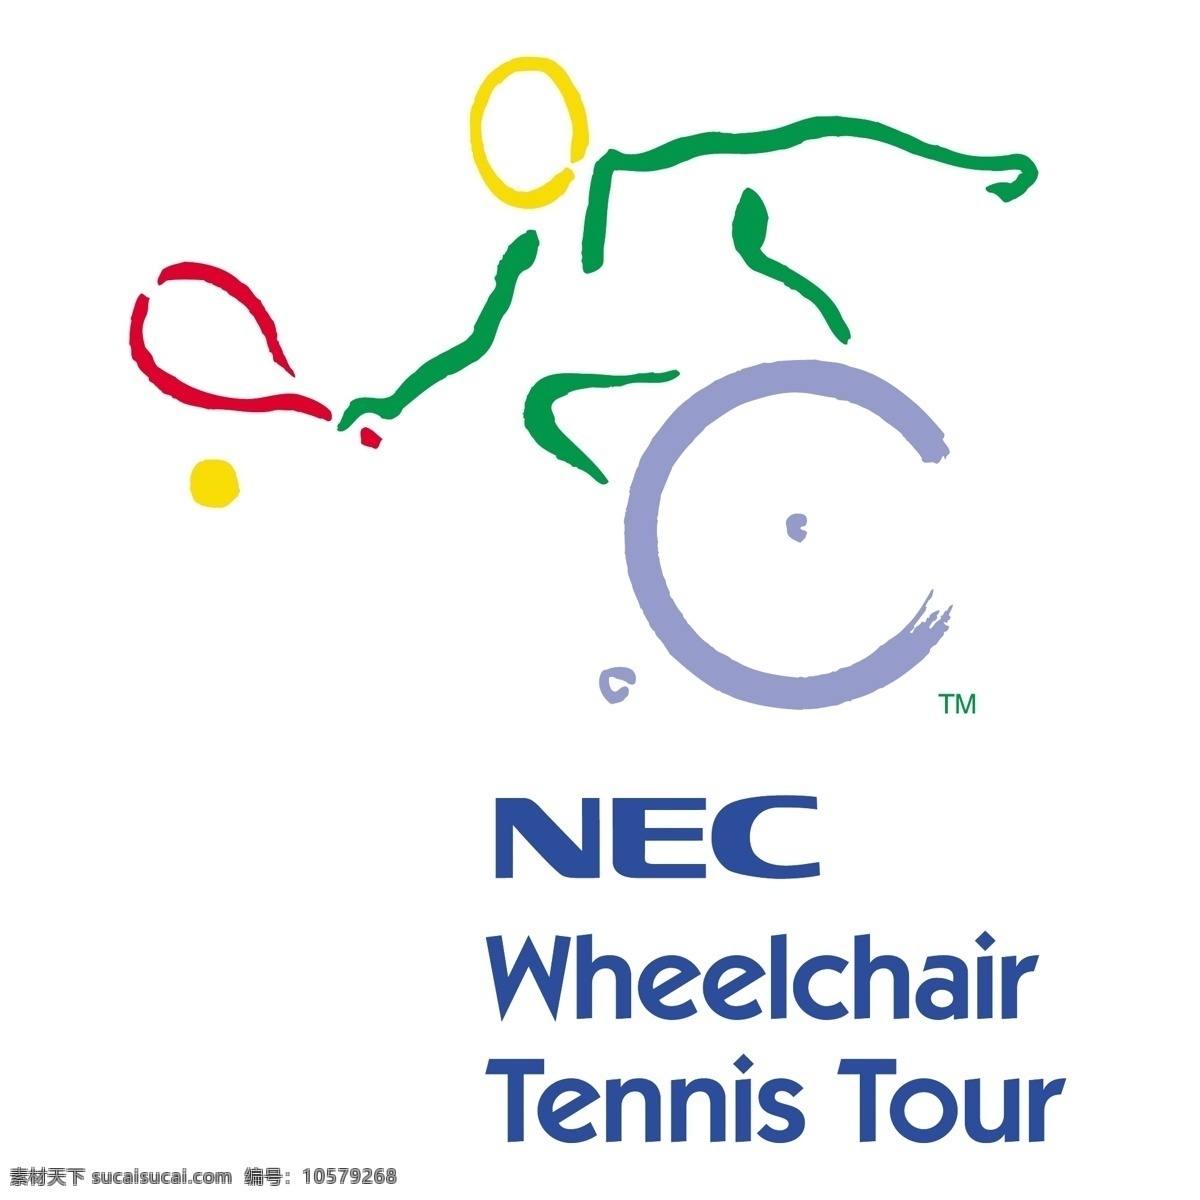 nec 轮椅 网球 巡回赛 标识 公司 免费 品牌 品牌标识 商标 矢量标志下载 免费矢量标识 矢量 psd源文件 logo设计